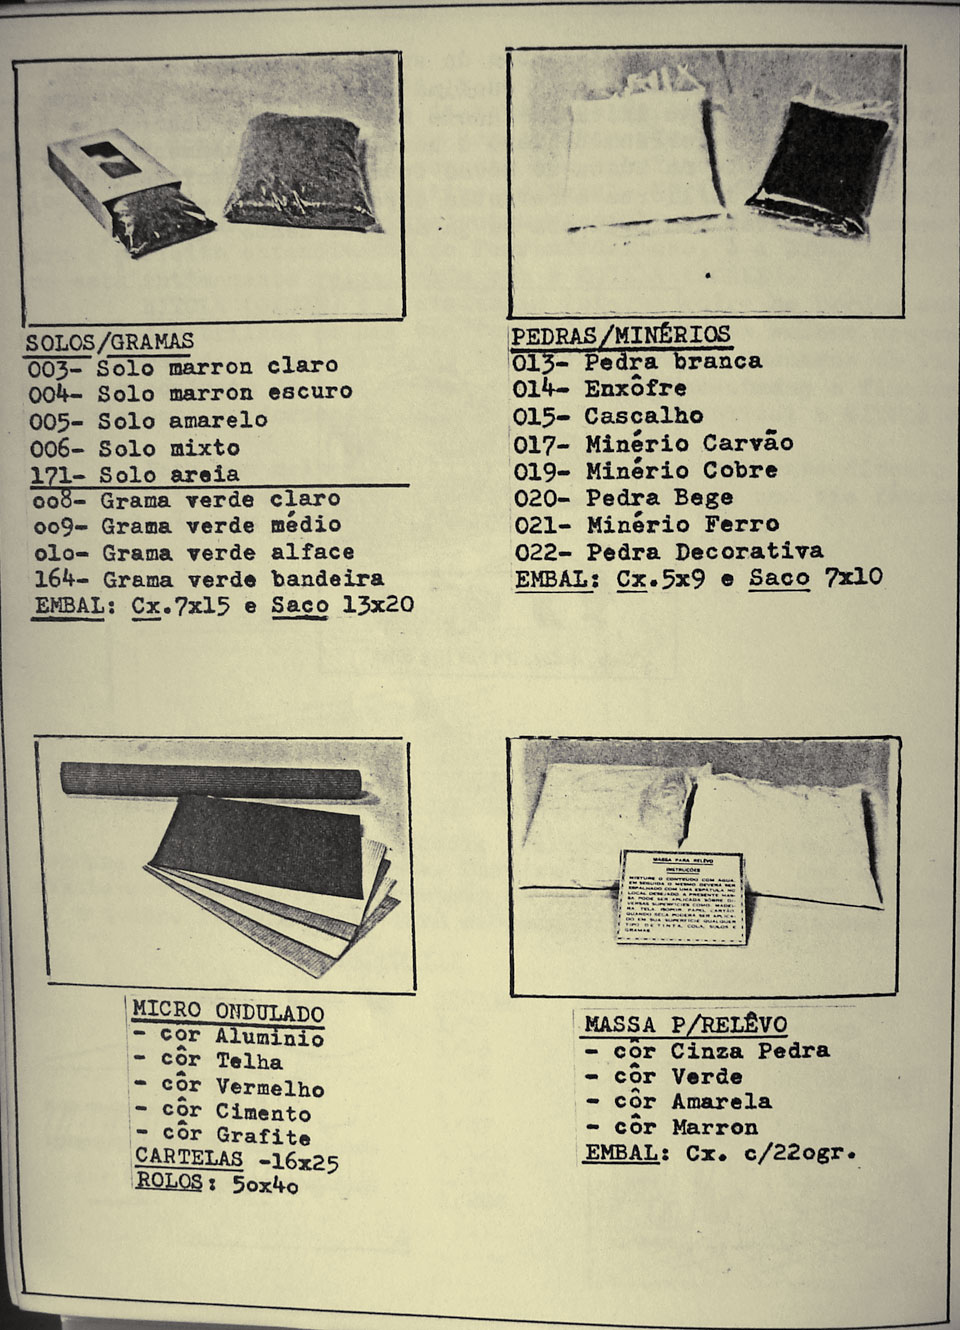 Na página 8 do catálogo da Miniaturas Artesanais, vários itens como grama, solos, pedras, papéis microondulados e massa para relevo em maquetes de ferreomodelismo